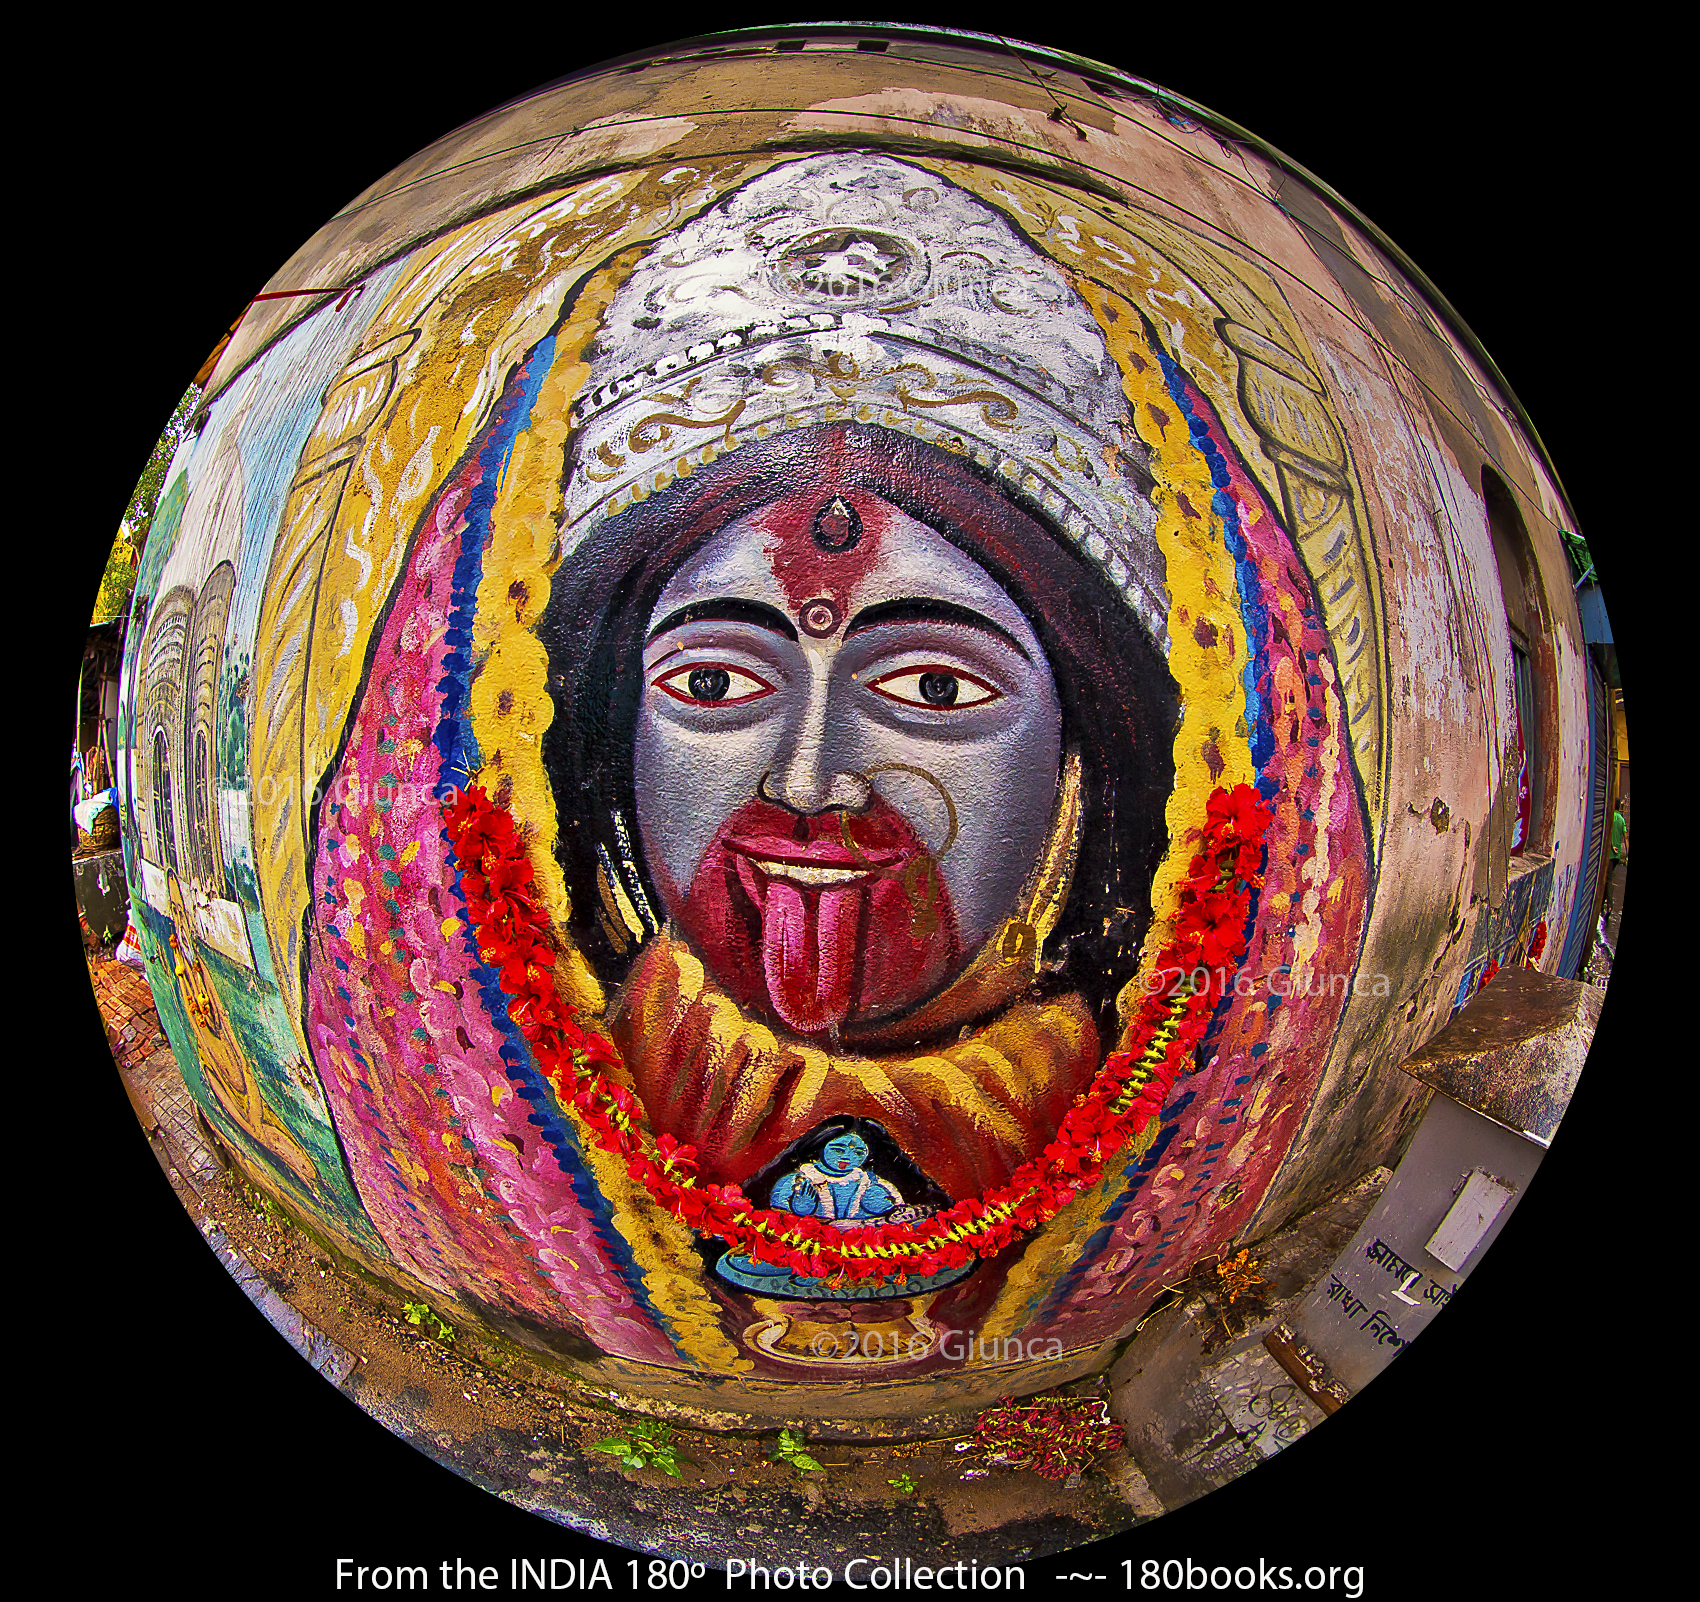 Image of Goddess Kali Mural, in Kolkata